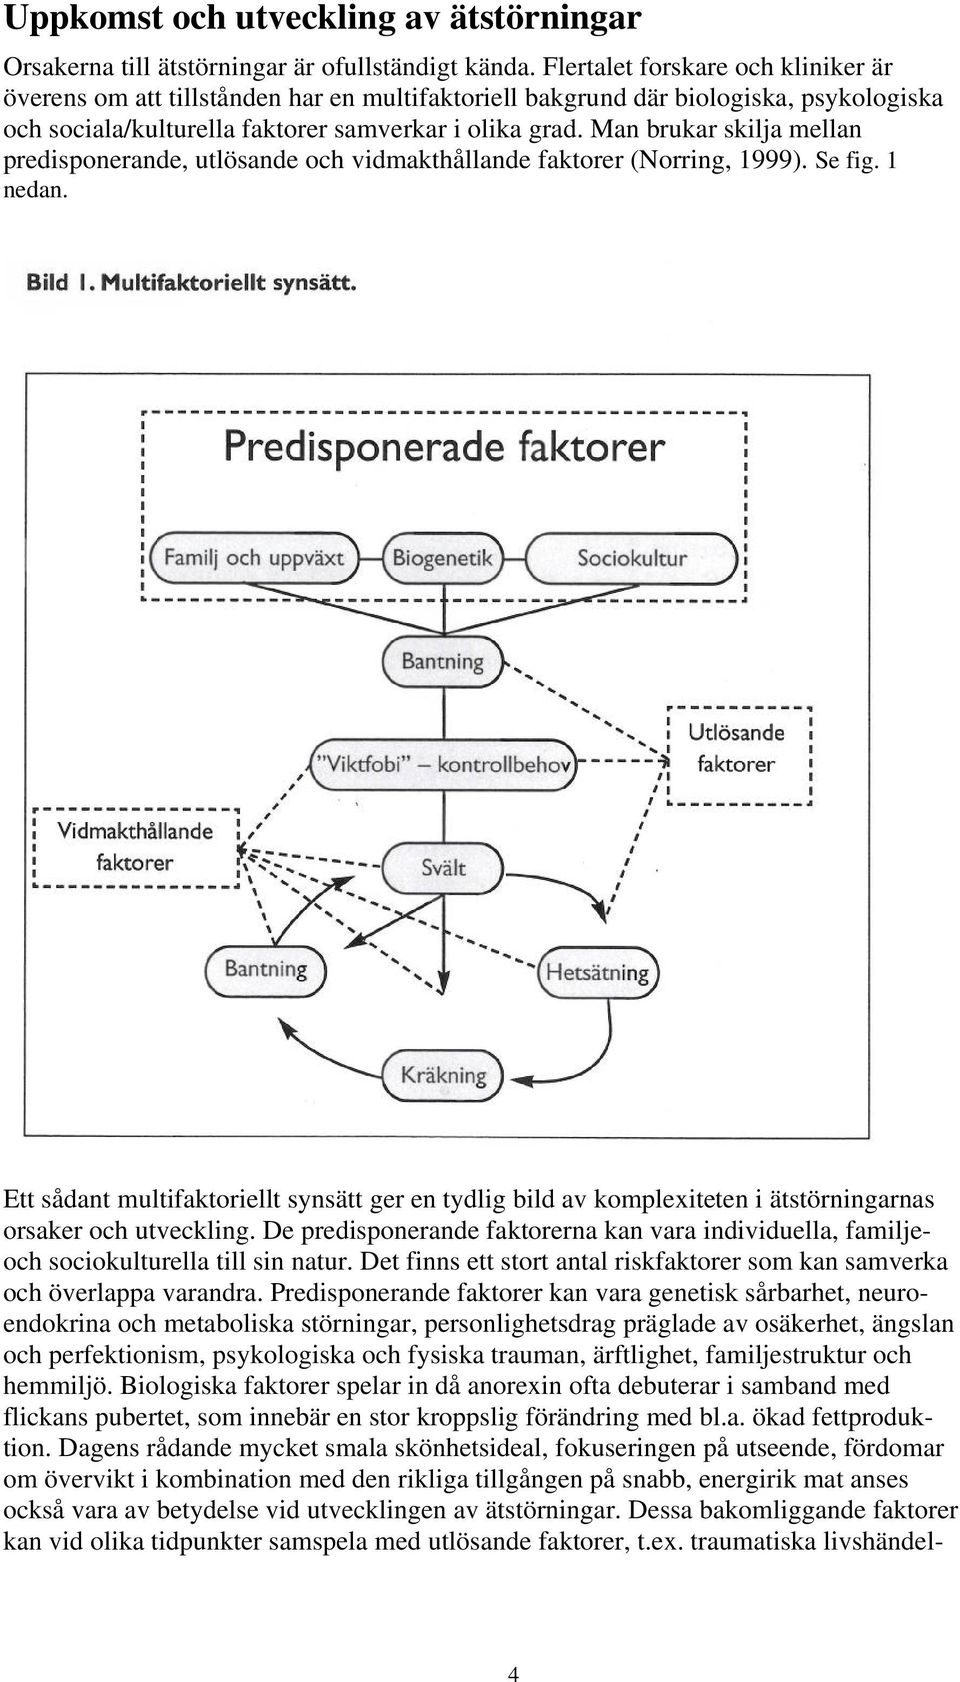 Man brukar skilja mellan predisponerande, utlösande och vidmakthållande faktorer (Norring, 1999). Se fig. 1 nedan.